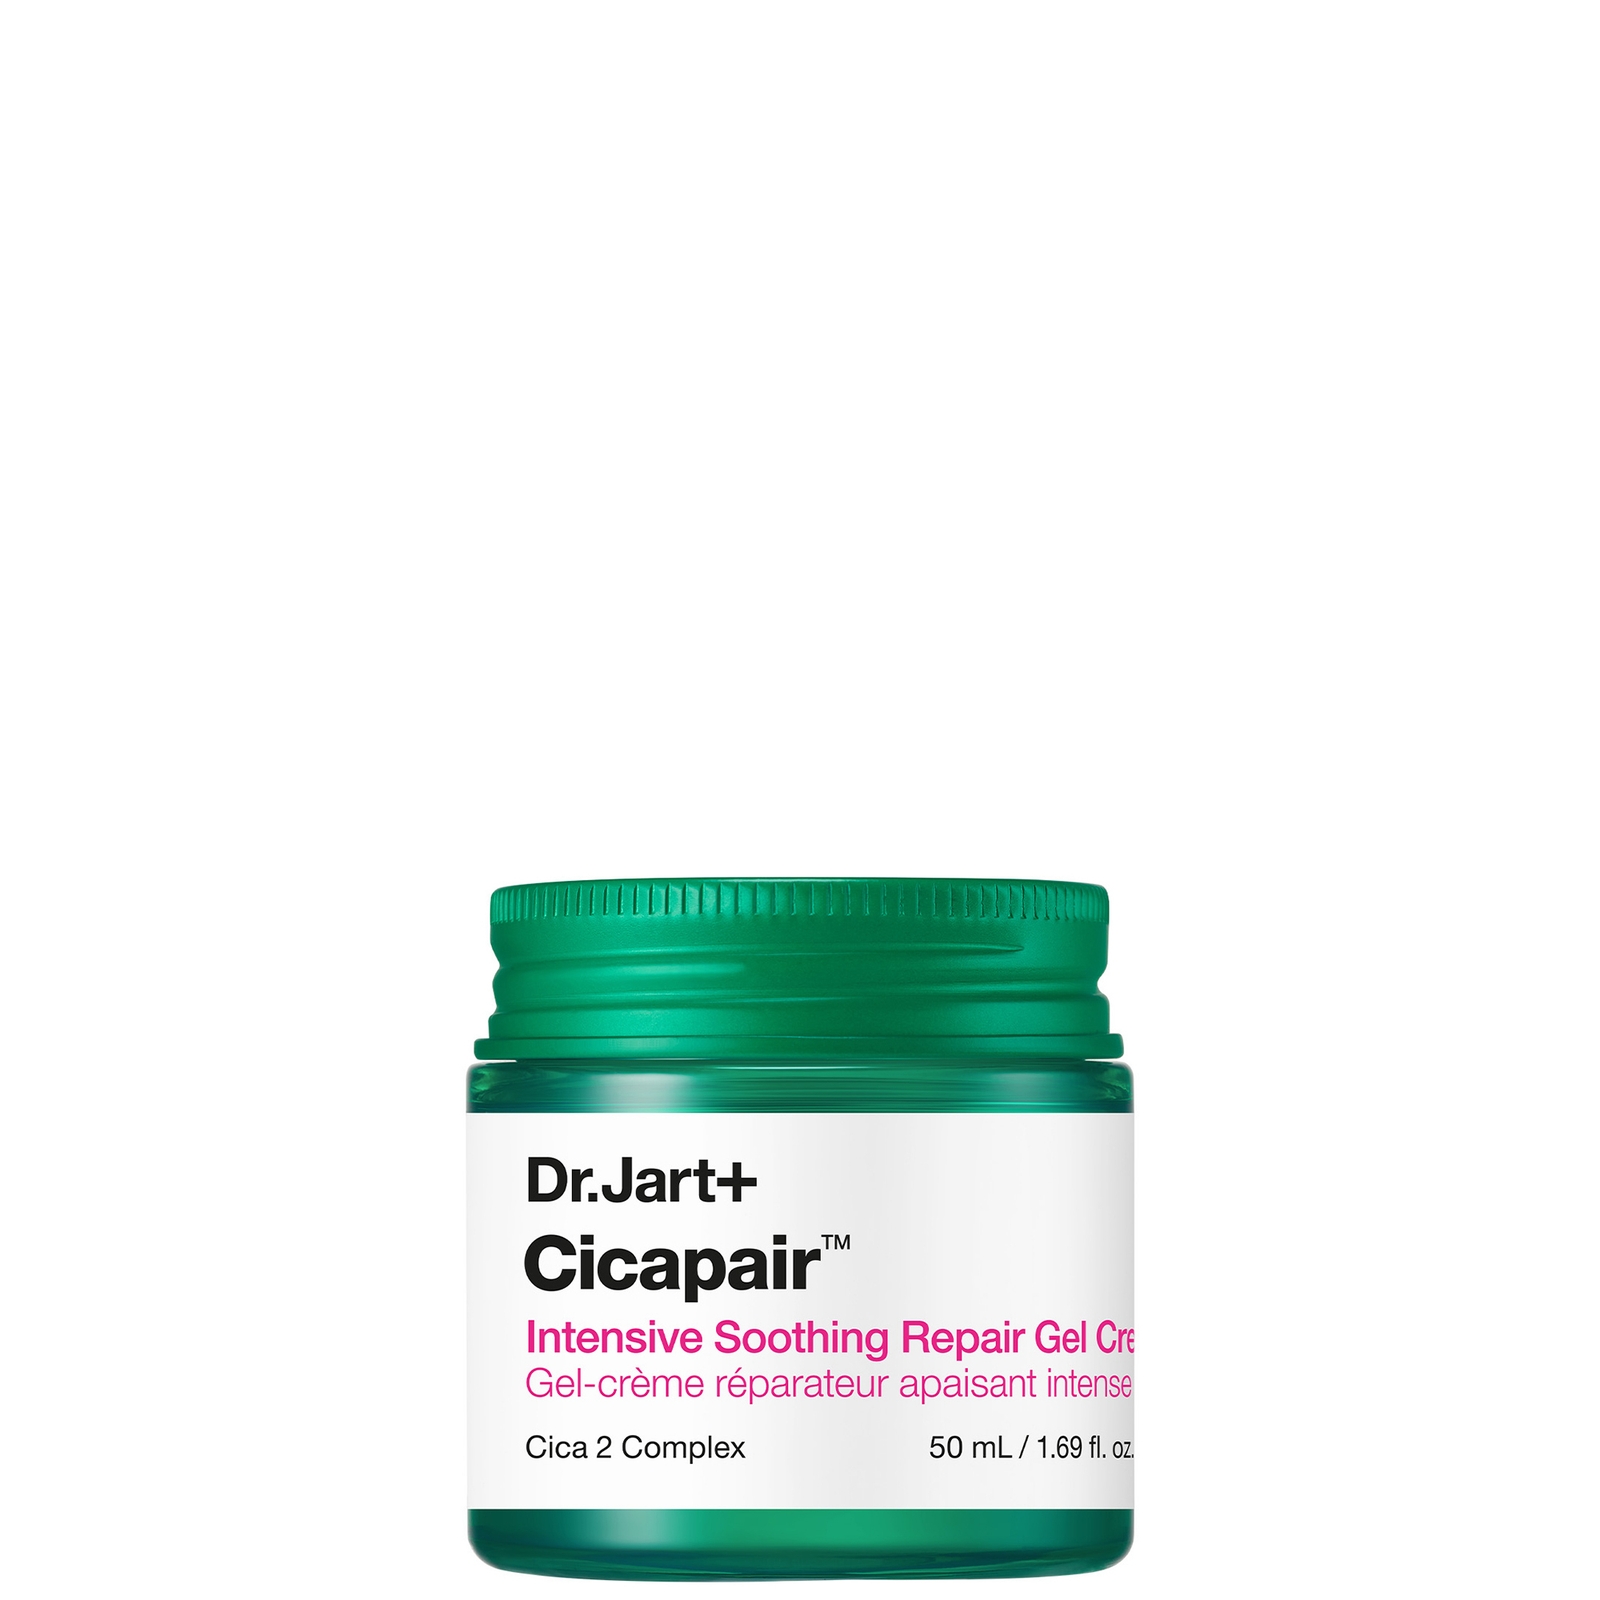 Dr.Jart+ Cicapair Intensive Soothing Repair Gel Cream 50ml von Dr.Jart+